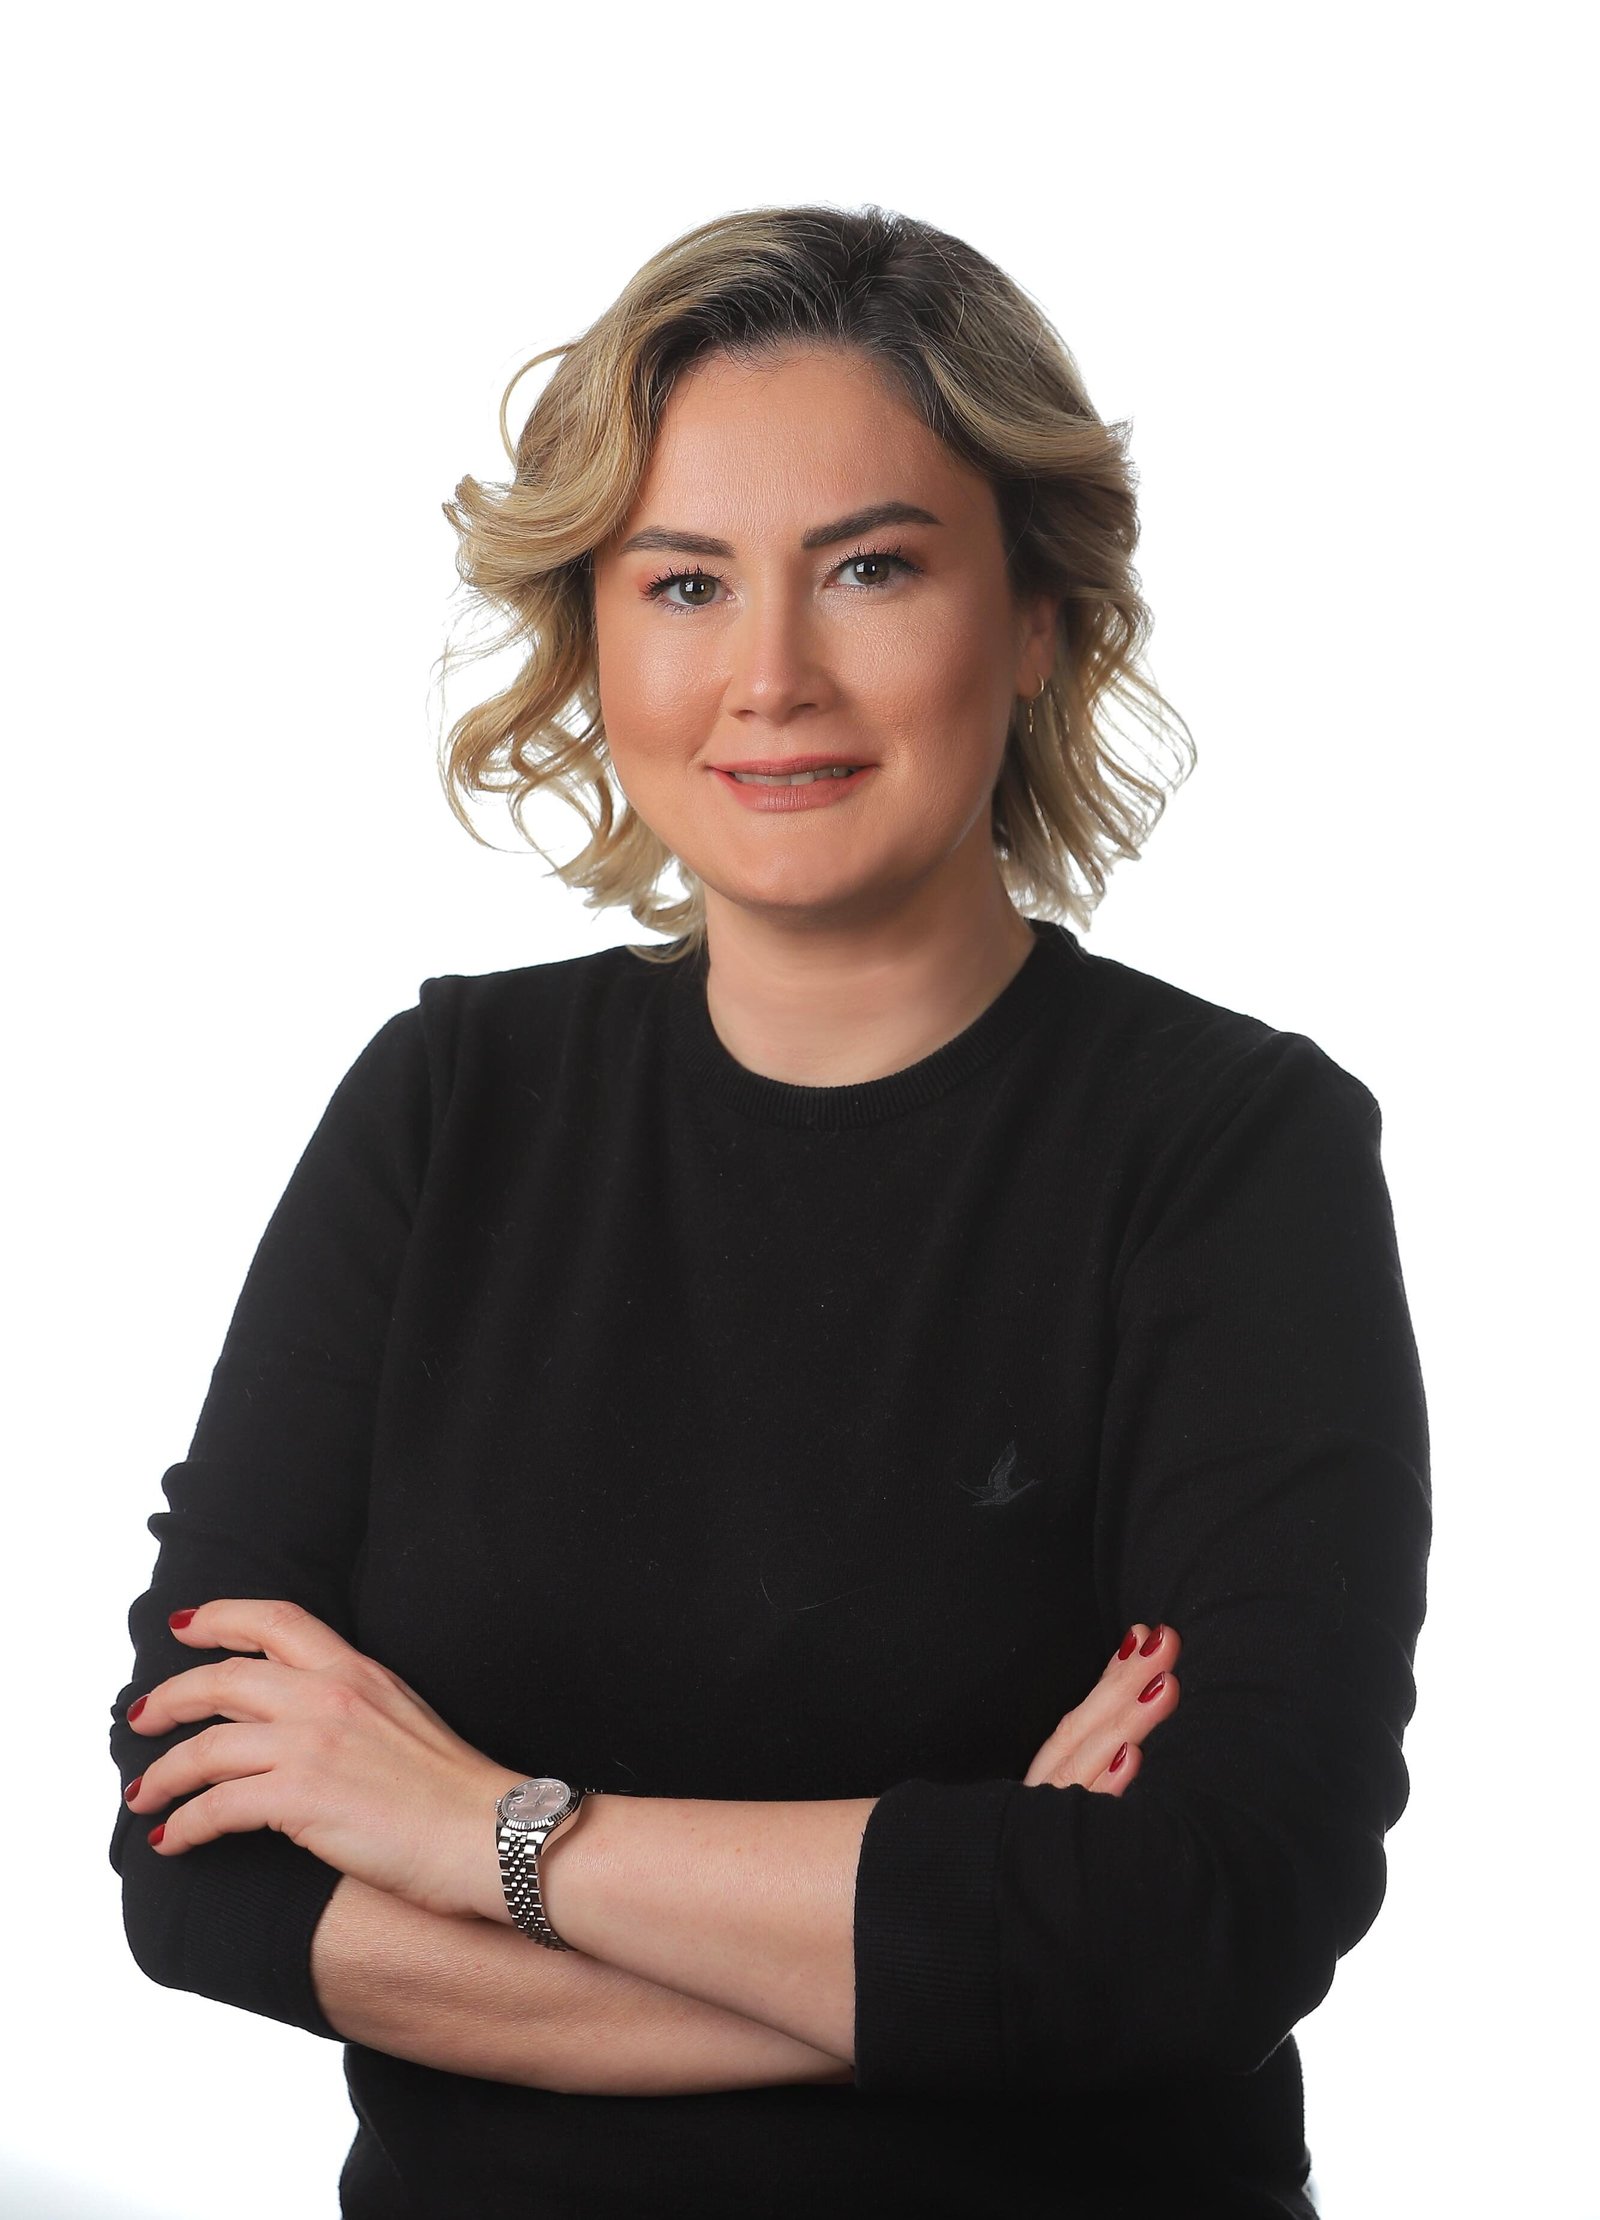 İpek Süzmetaş, PepsiCo Türkiye Finans Kıdemli Direktörü oldu